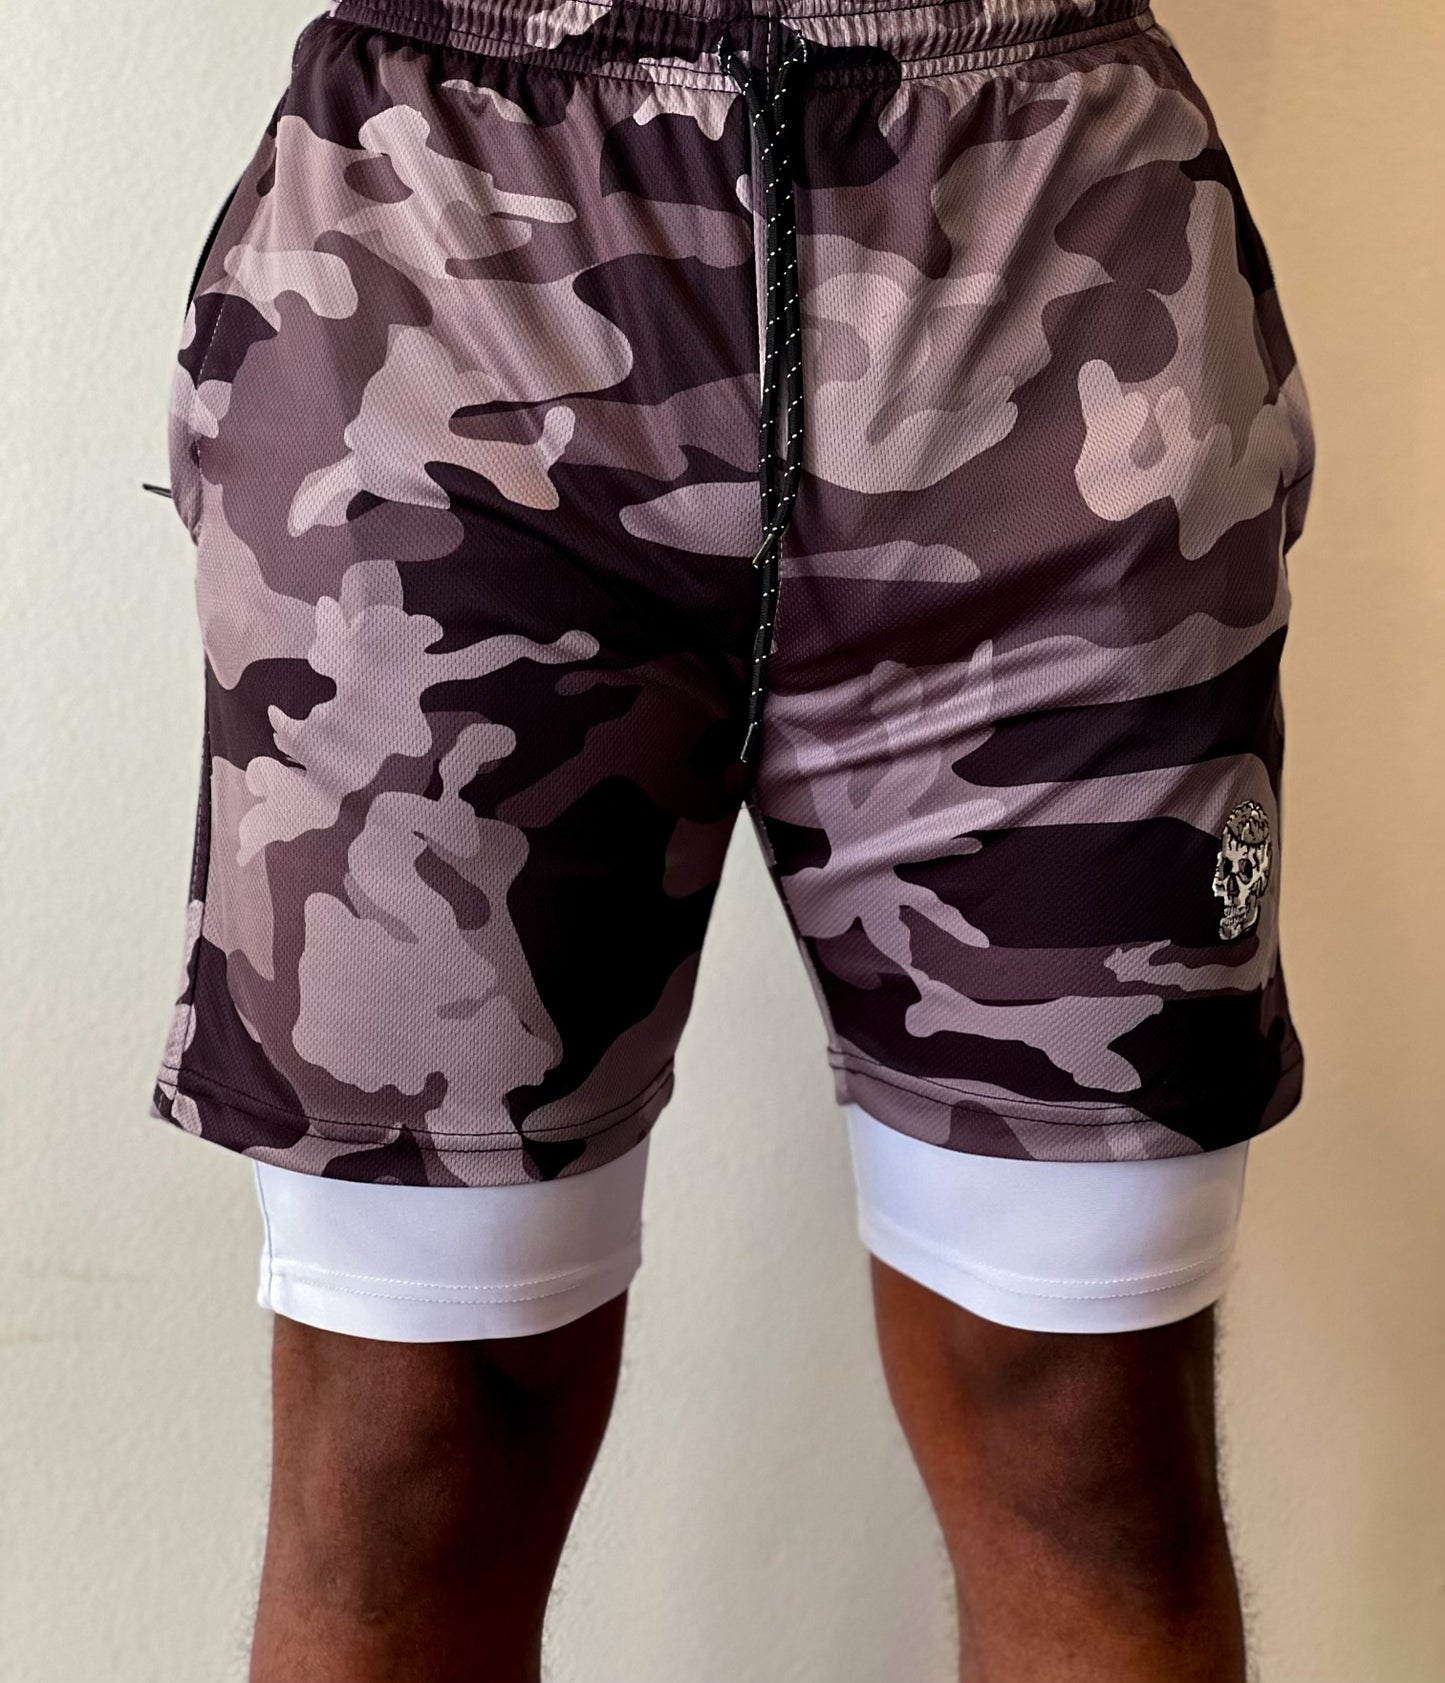 GoldMind$ Black Athletic shorts